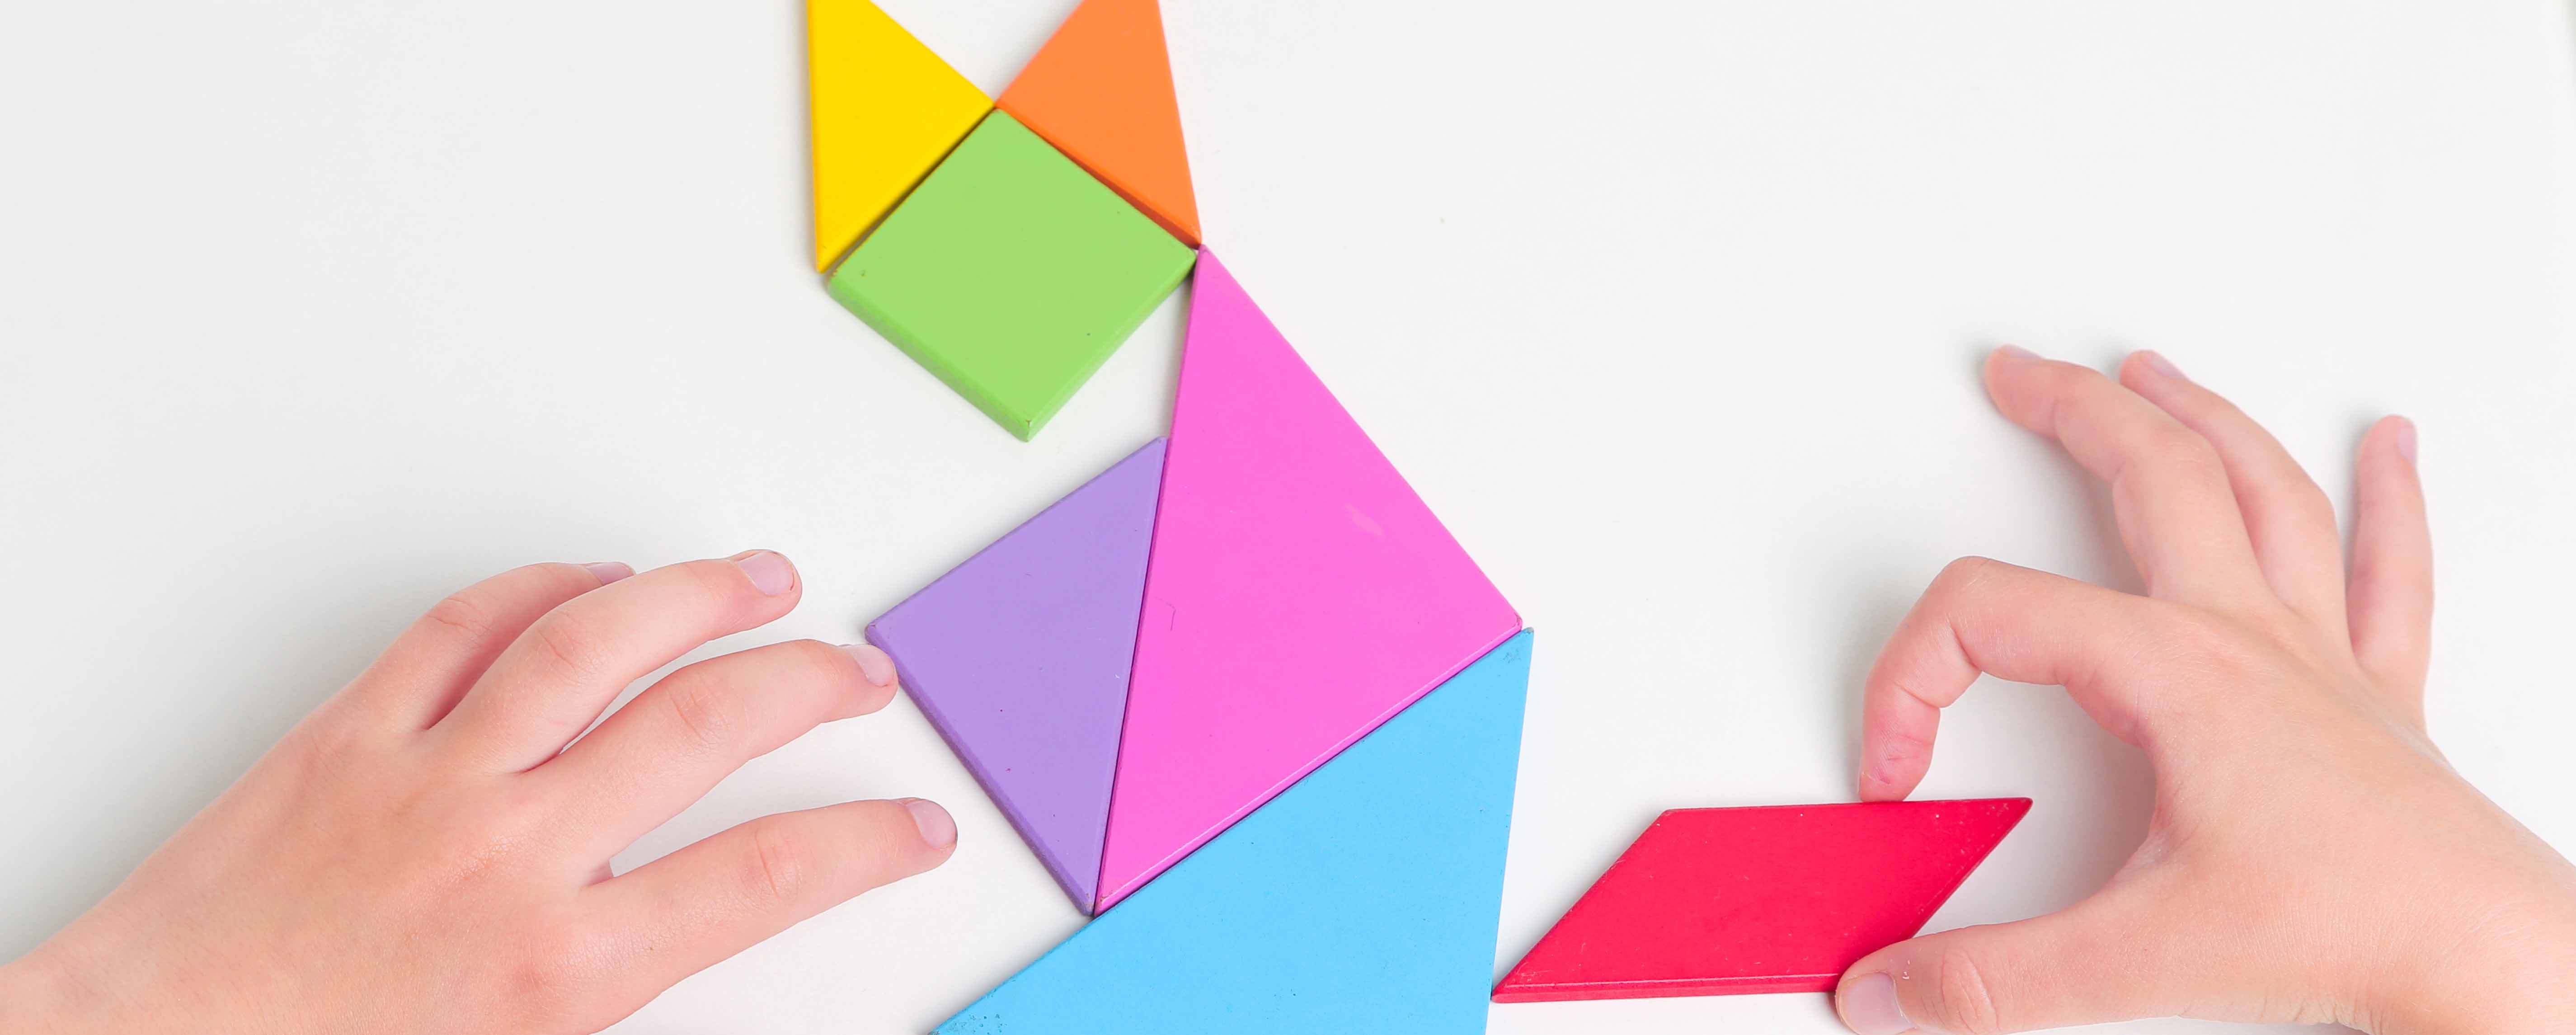 decouverte geometrie ludique jeu tangram